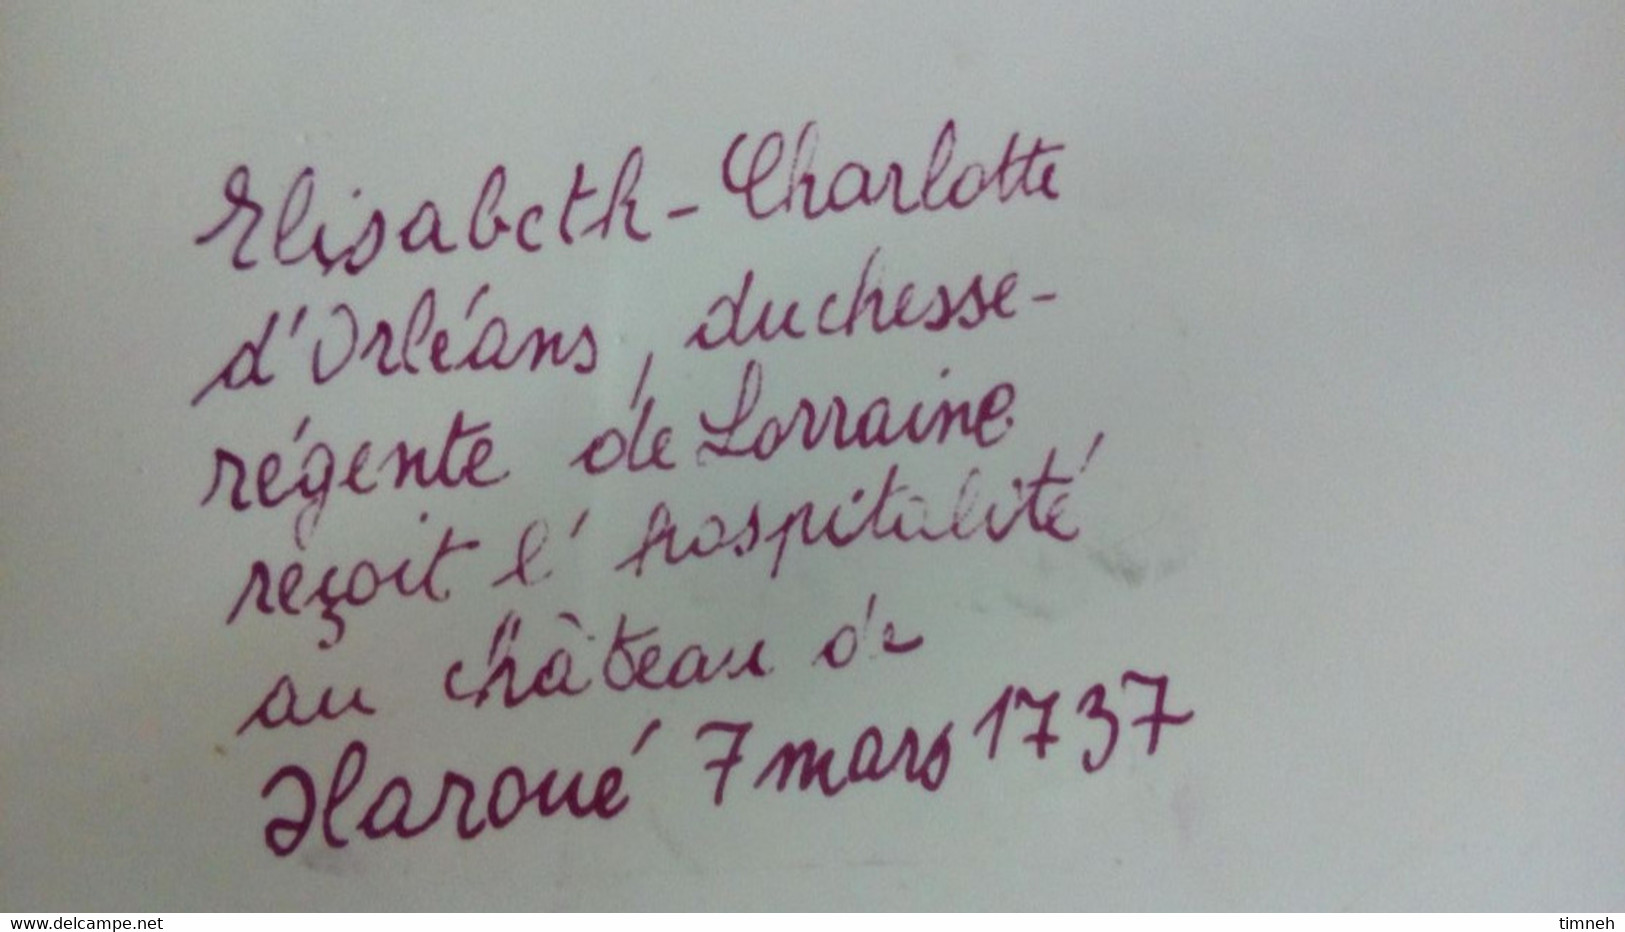 François GROSS Sarreguemines assiette plate CHATEAU HAROUET 1737 animé - Service Vieille Lorraine 1966 Bicentenaire